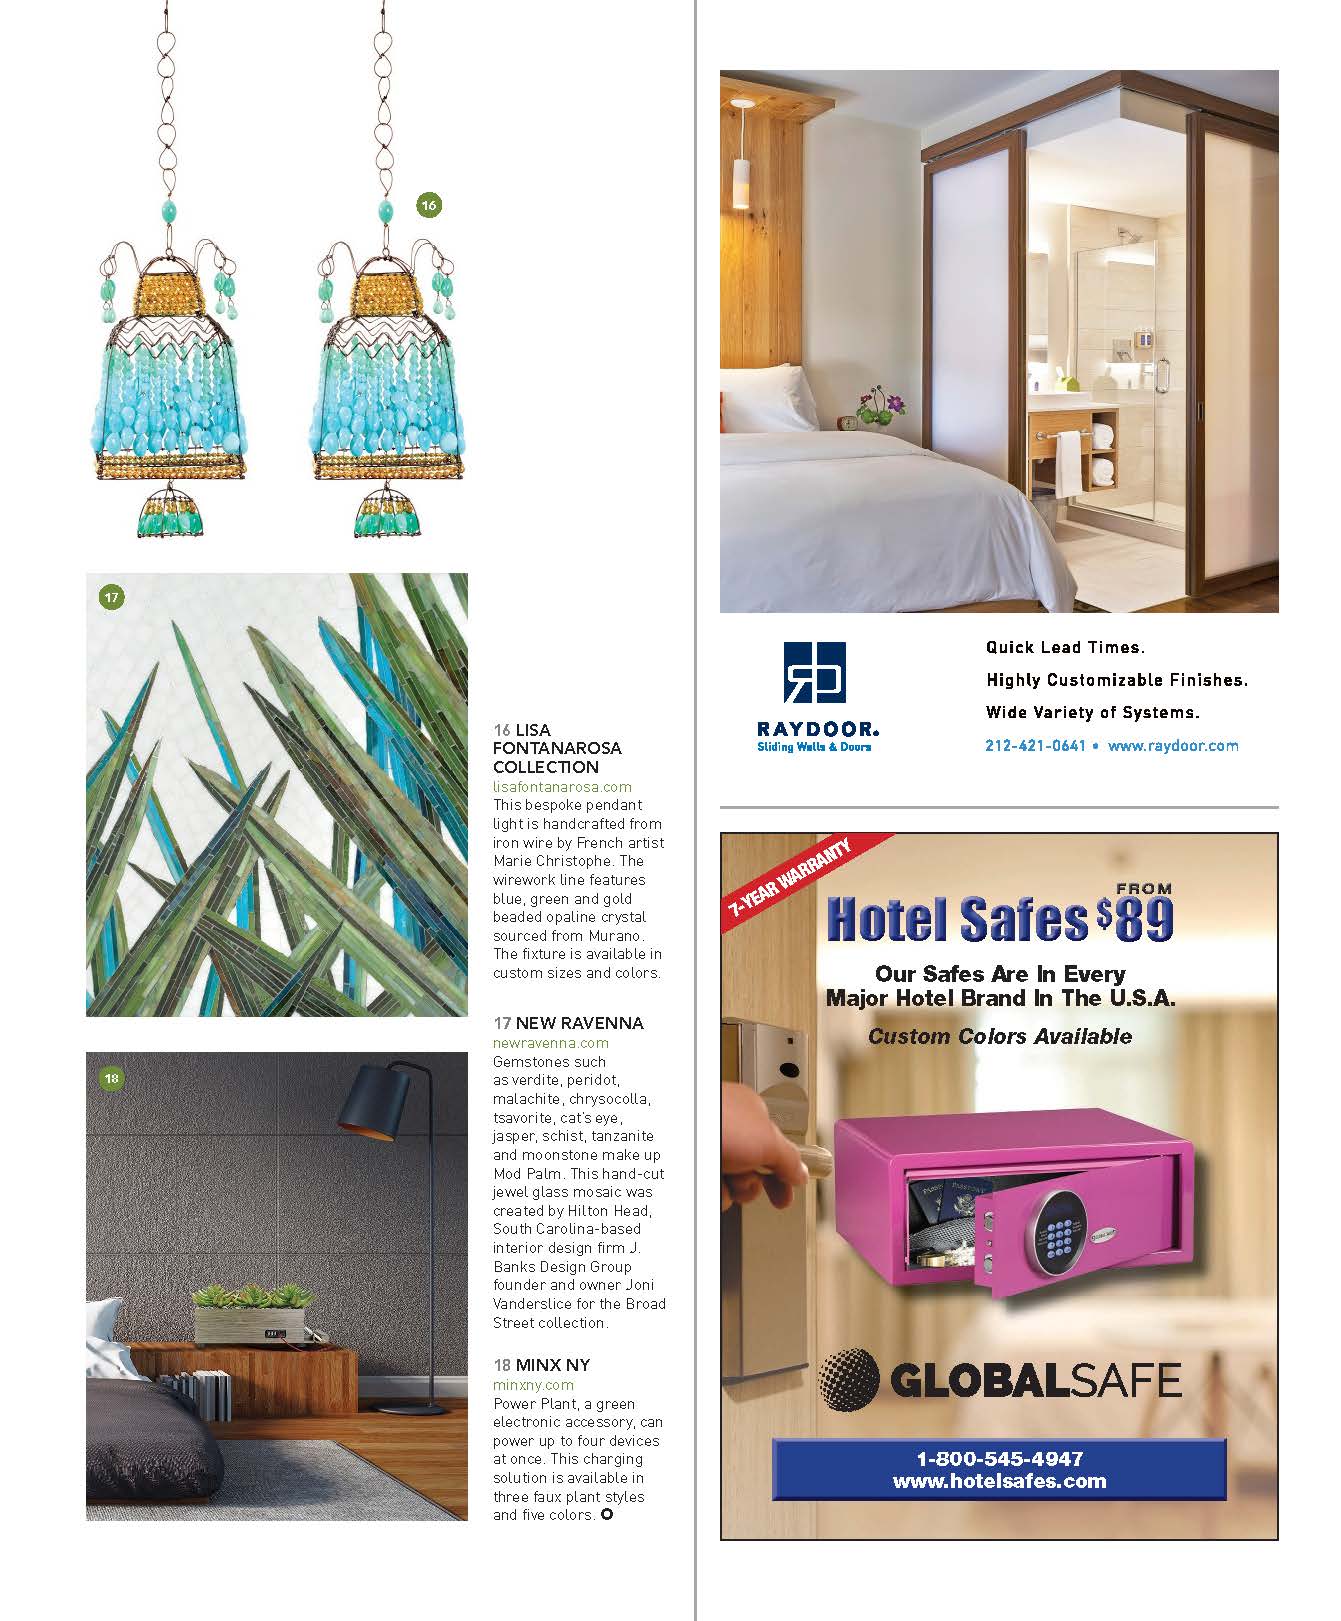 Boutique Design magazine features J Banks Design's Mod Palm mosaic pattern